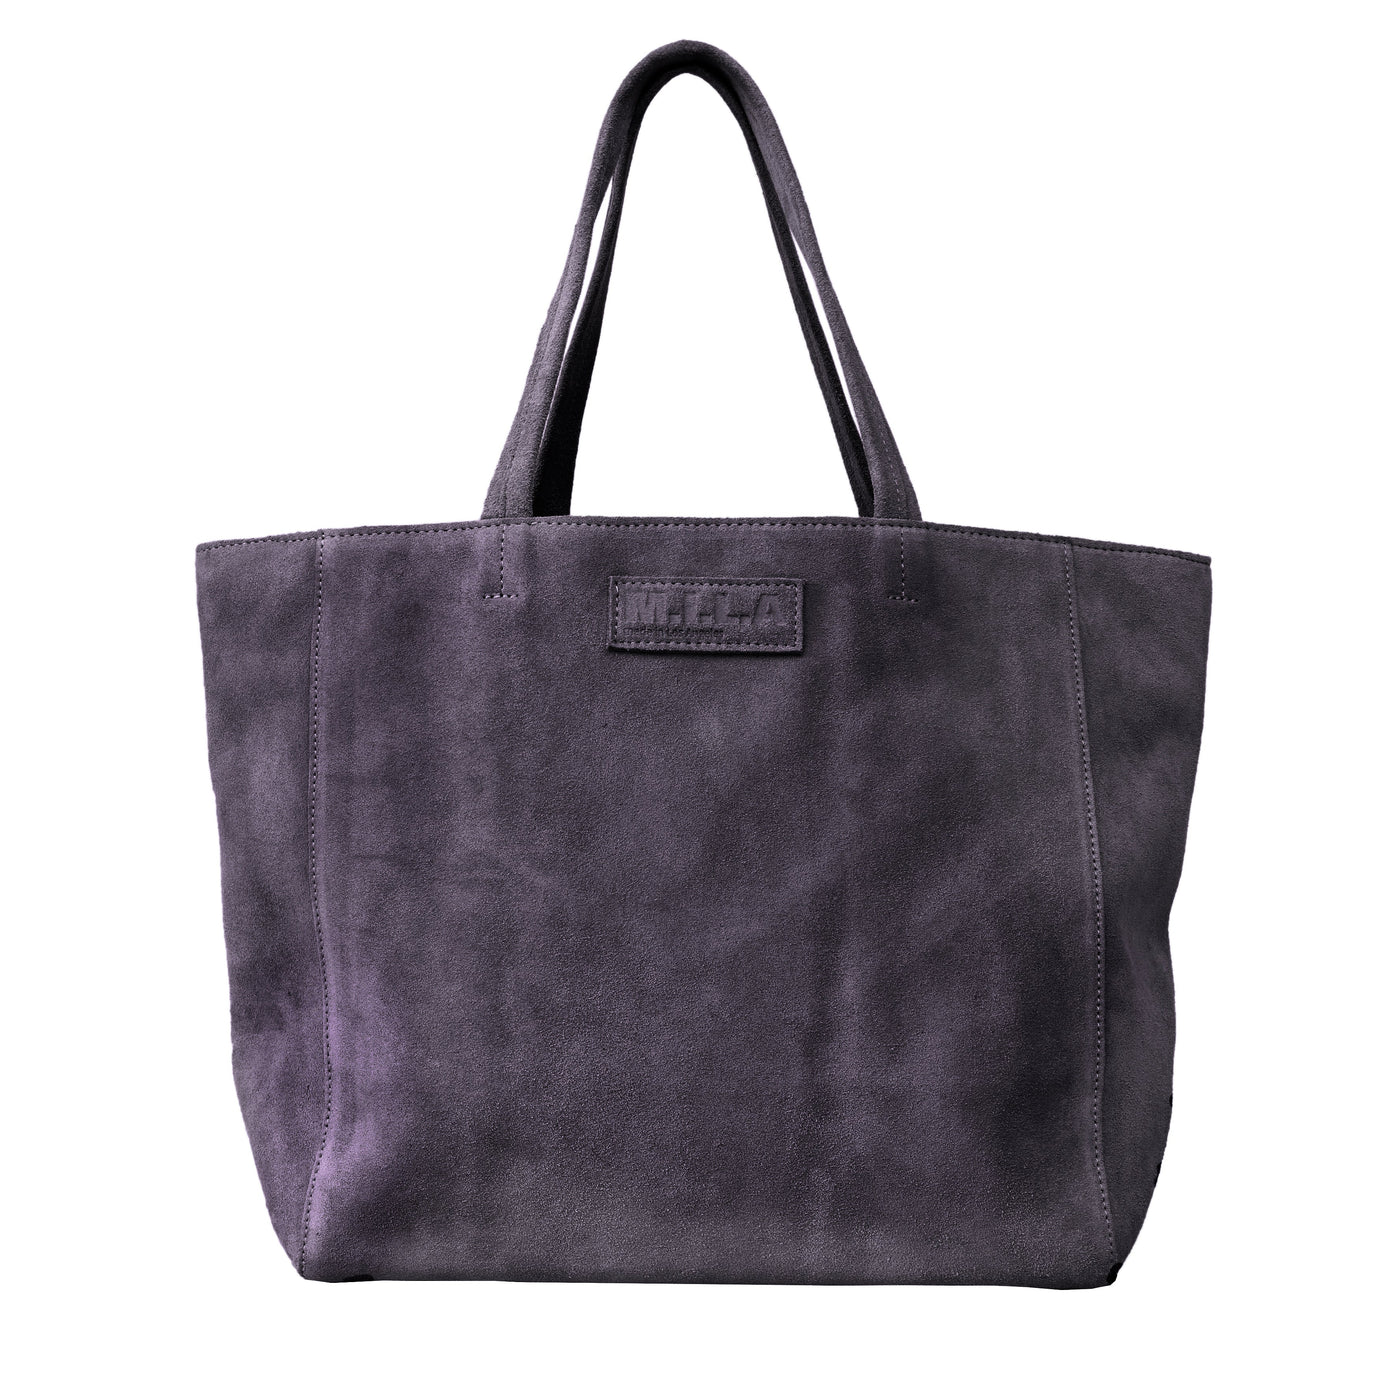 Dark Grey Suede Tote Bag